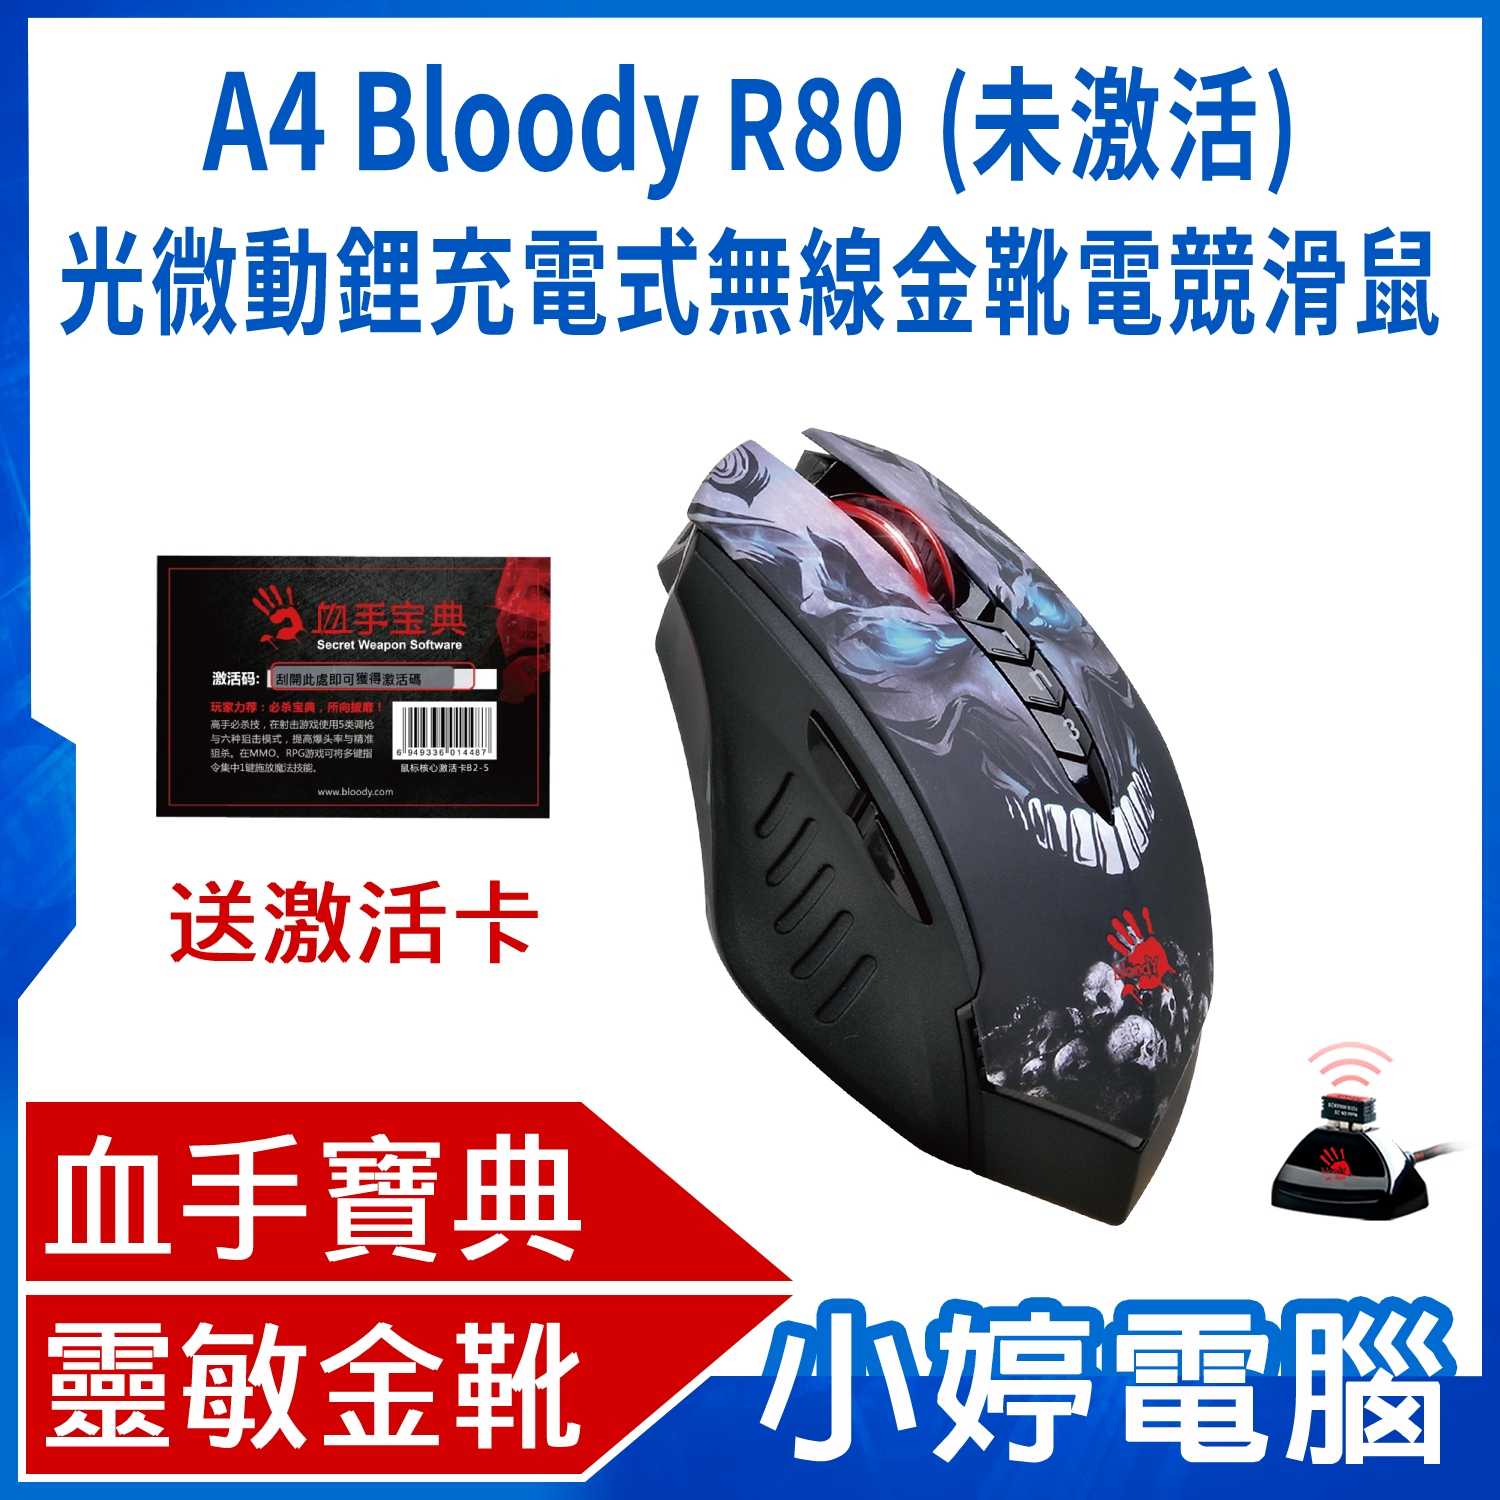 【小婷電腦】A4 Bloody R80 (未激活)光微動鋰充電式無線金靴電競滑鼠 贈激活卡+金靴